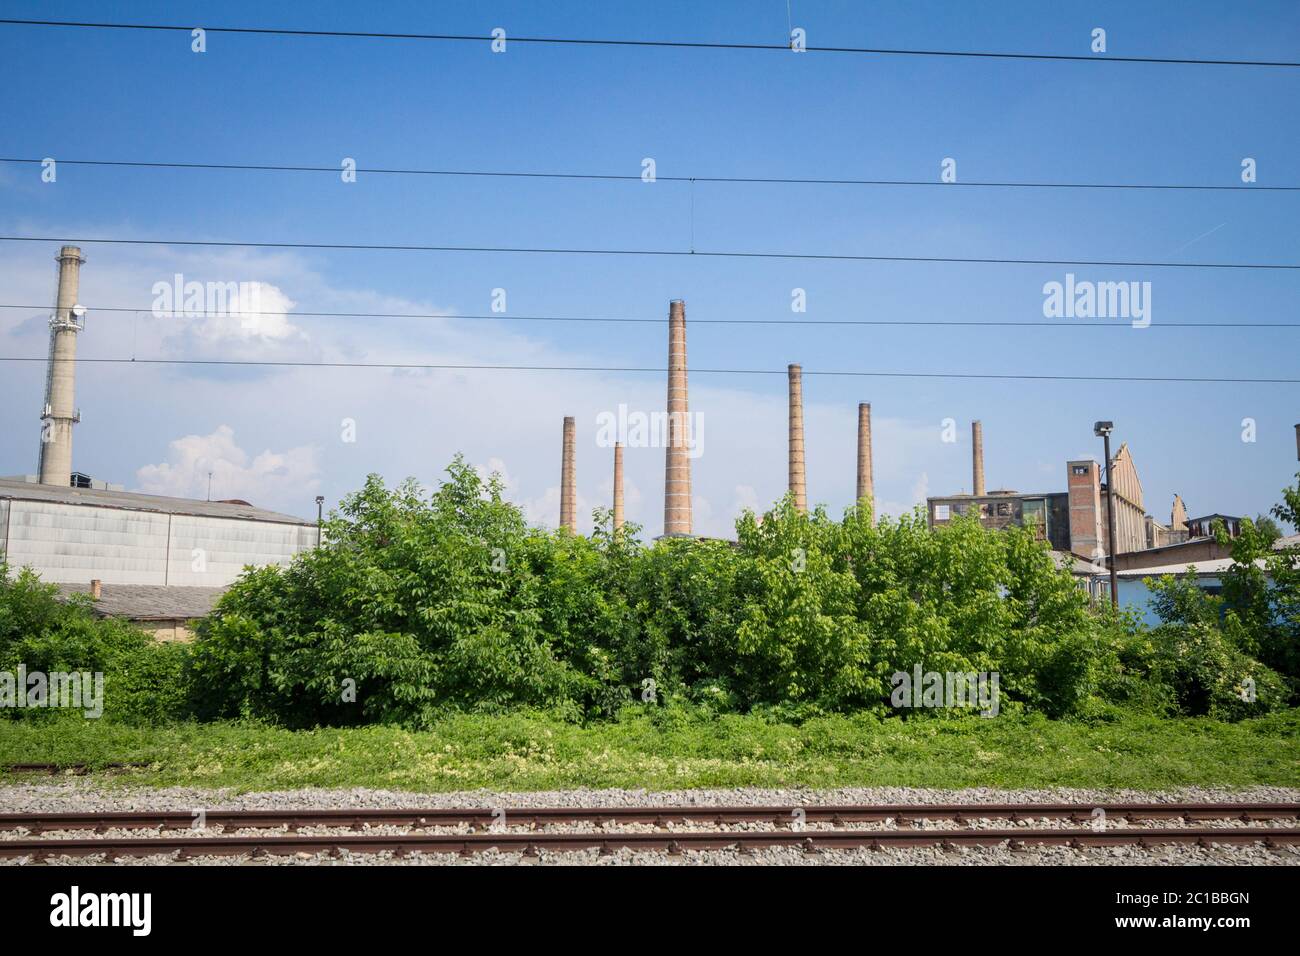 Panorama di un complesso industriale abbandonato con i suoi tipici alti camini in mattoni rossi mentre cavi e binari ferroviari sono visibili di fronte, dentro Foto Stock